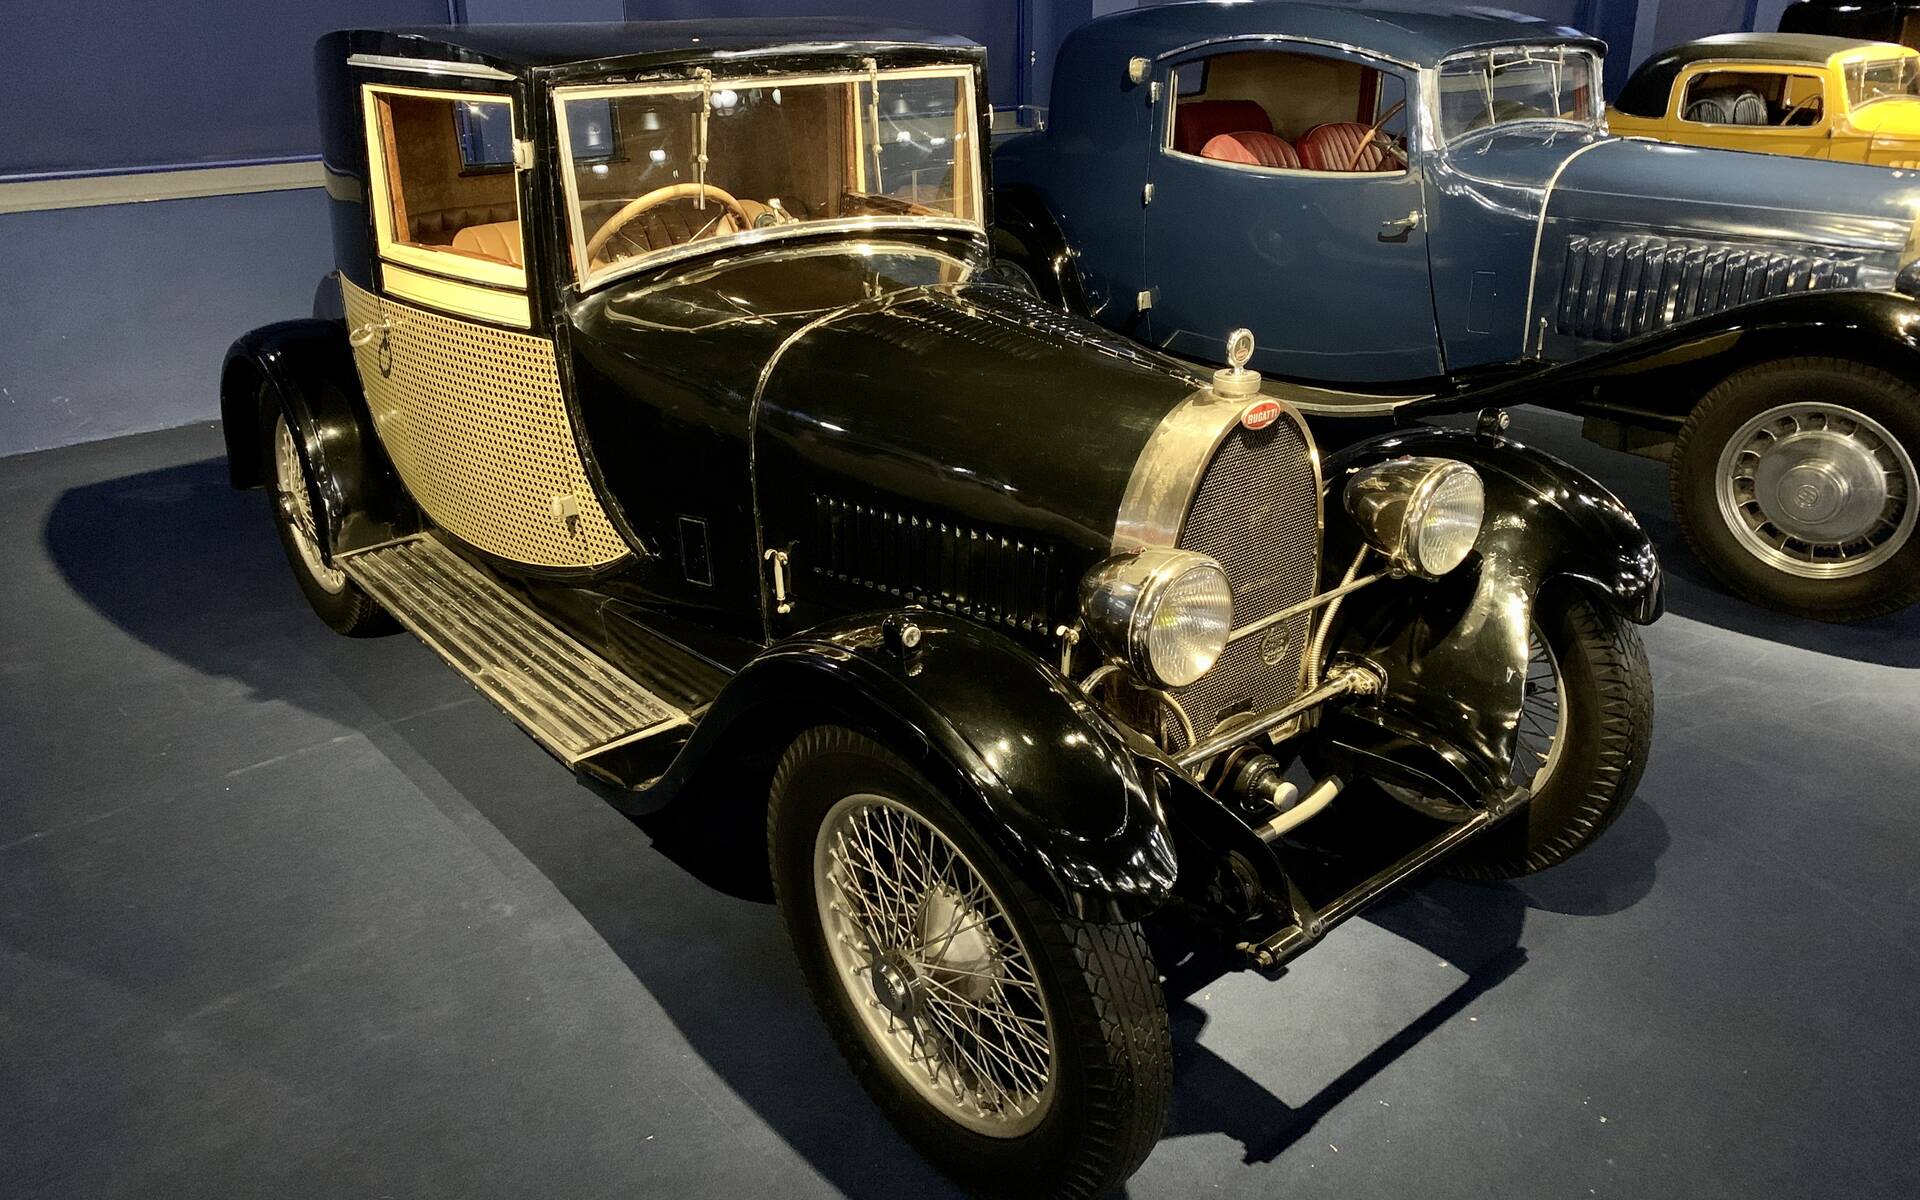 En photos : une centaine de Bugatti réunies dans un même musée 503099-en-photos-des-dizaines-de-bugatti-reunies-dans-un-meme-musee